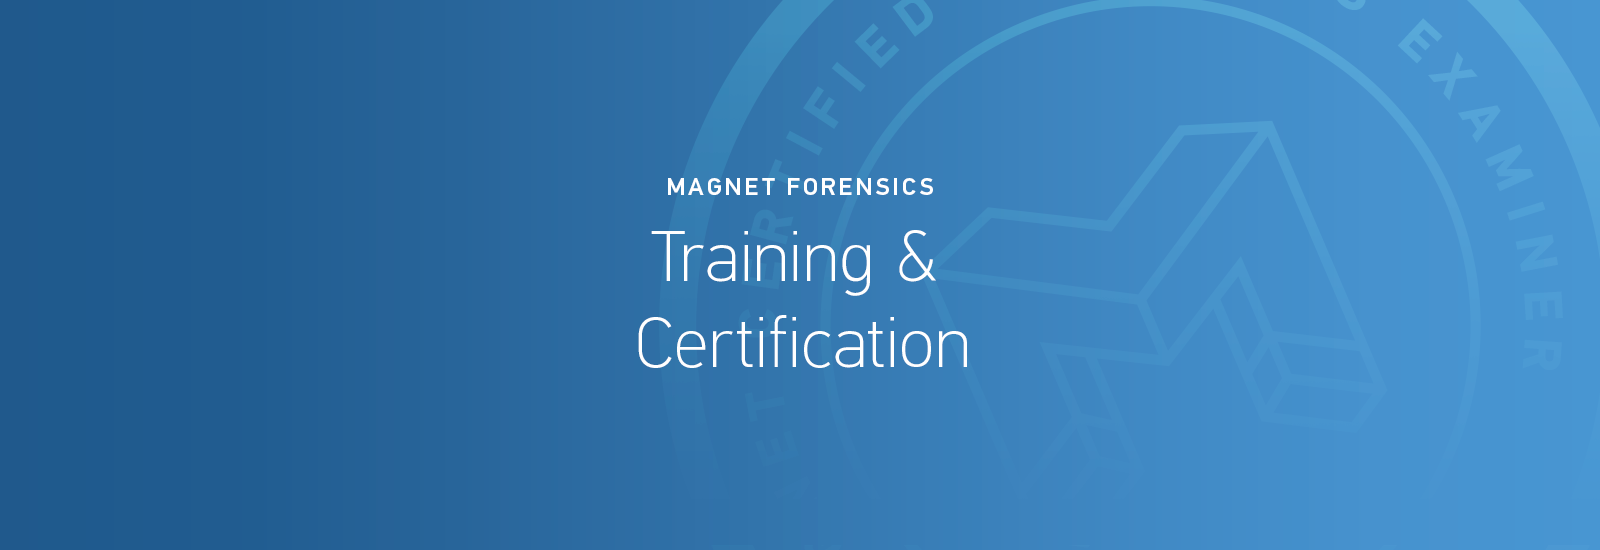 Generic blog header for Magnet training programs